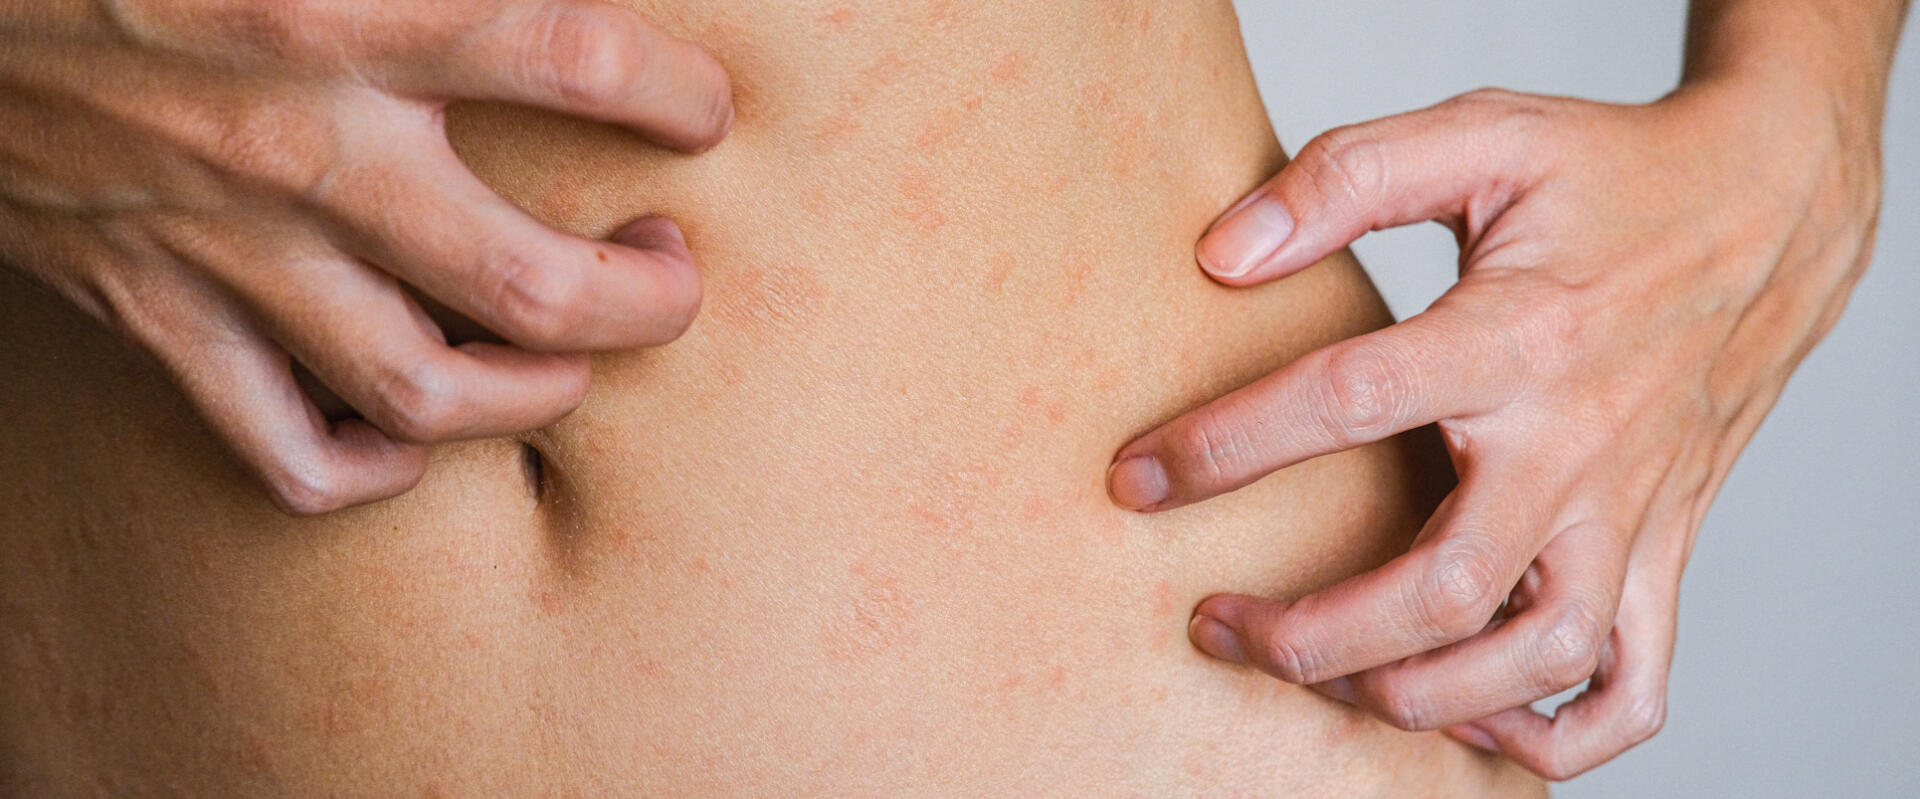 Najczęściej występujące choroby skóry (dermatozy) i ich objawy